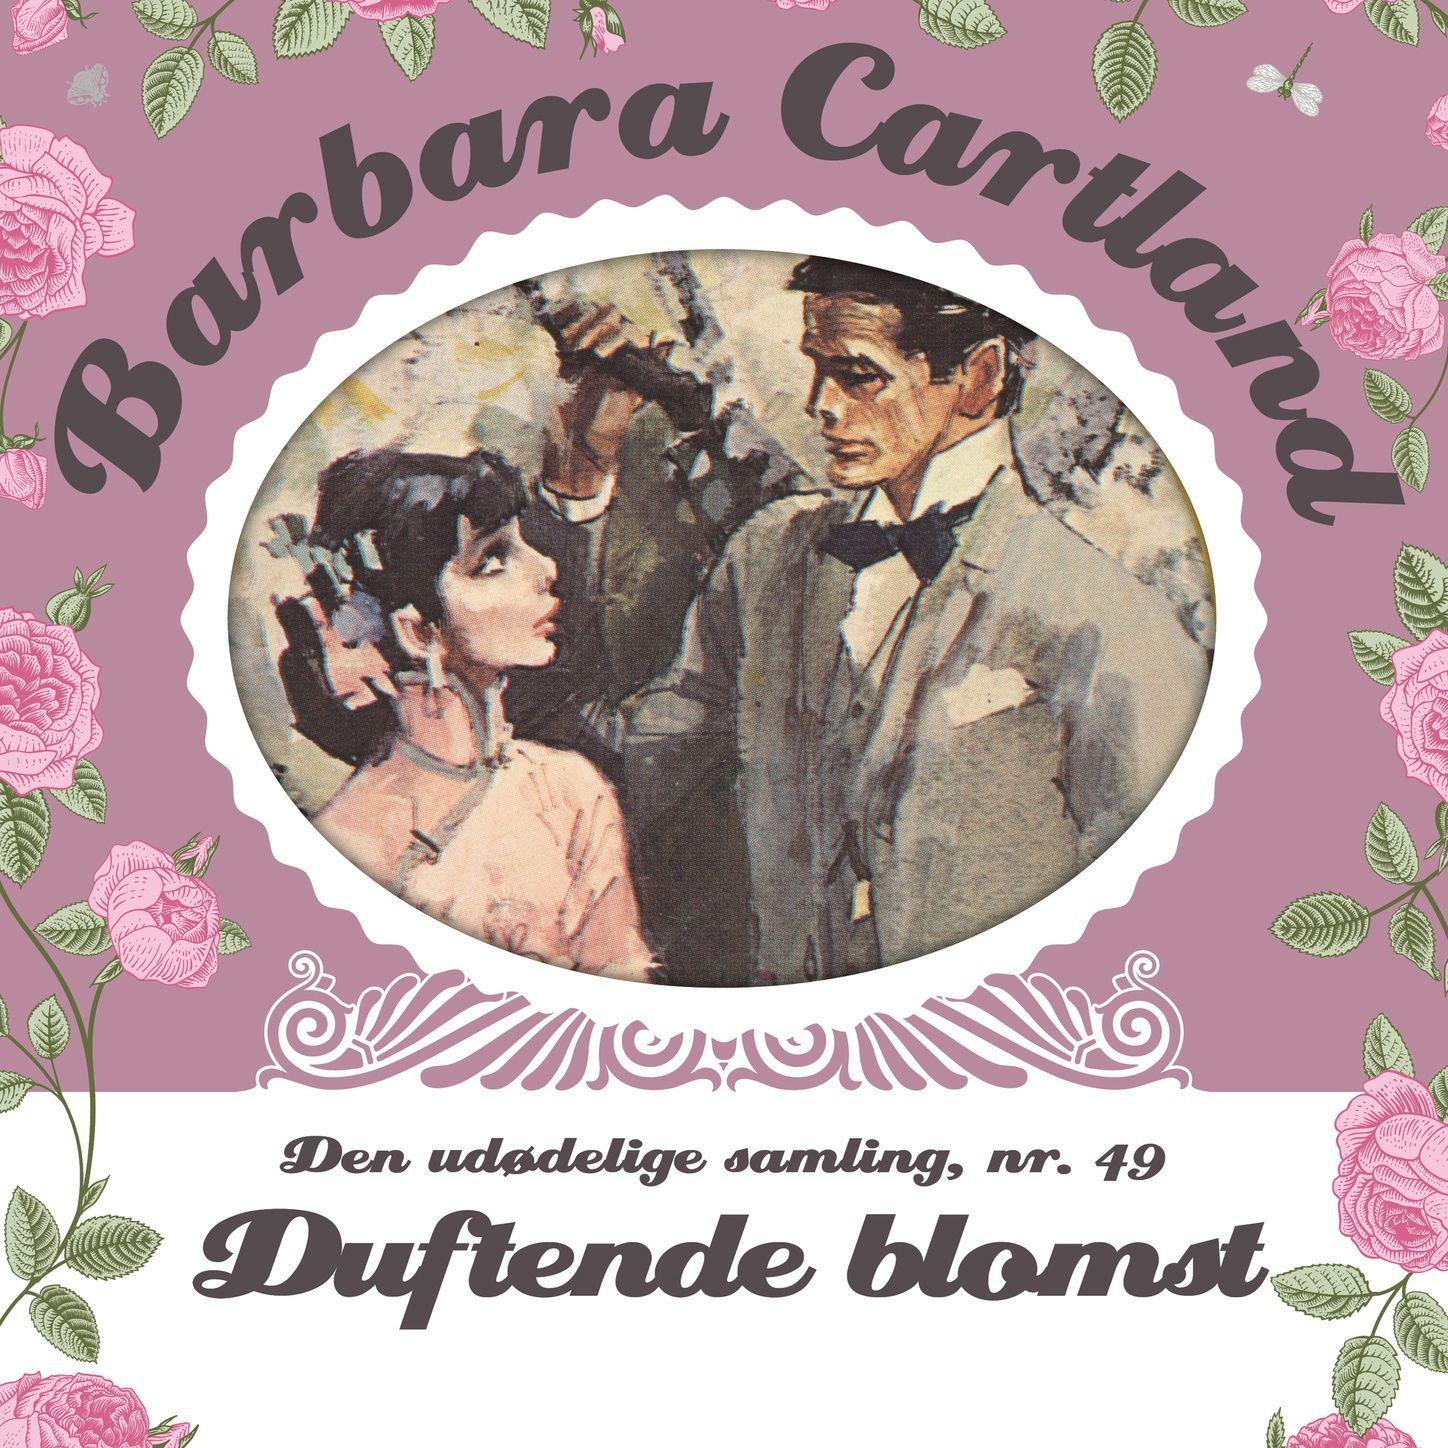 Duftende blomst  Barbara Cartland  Den ud delige samling 49, del027